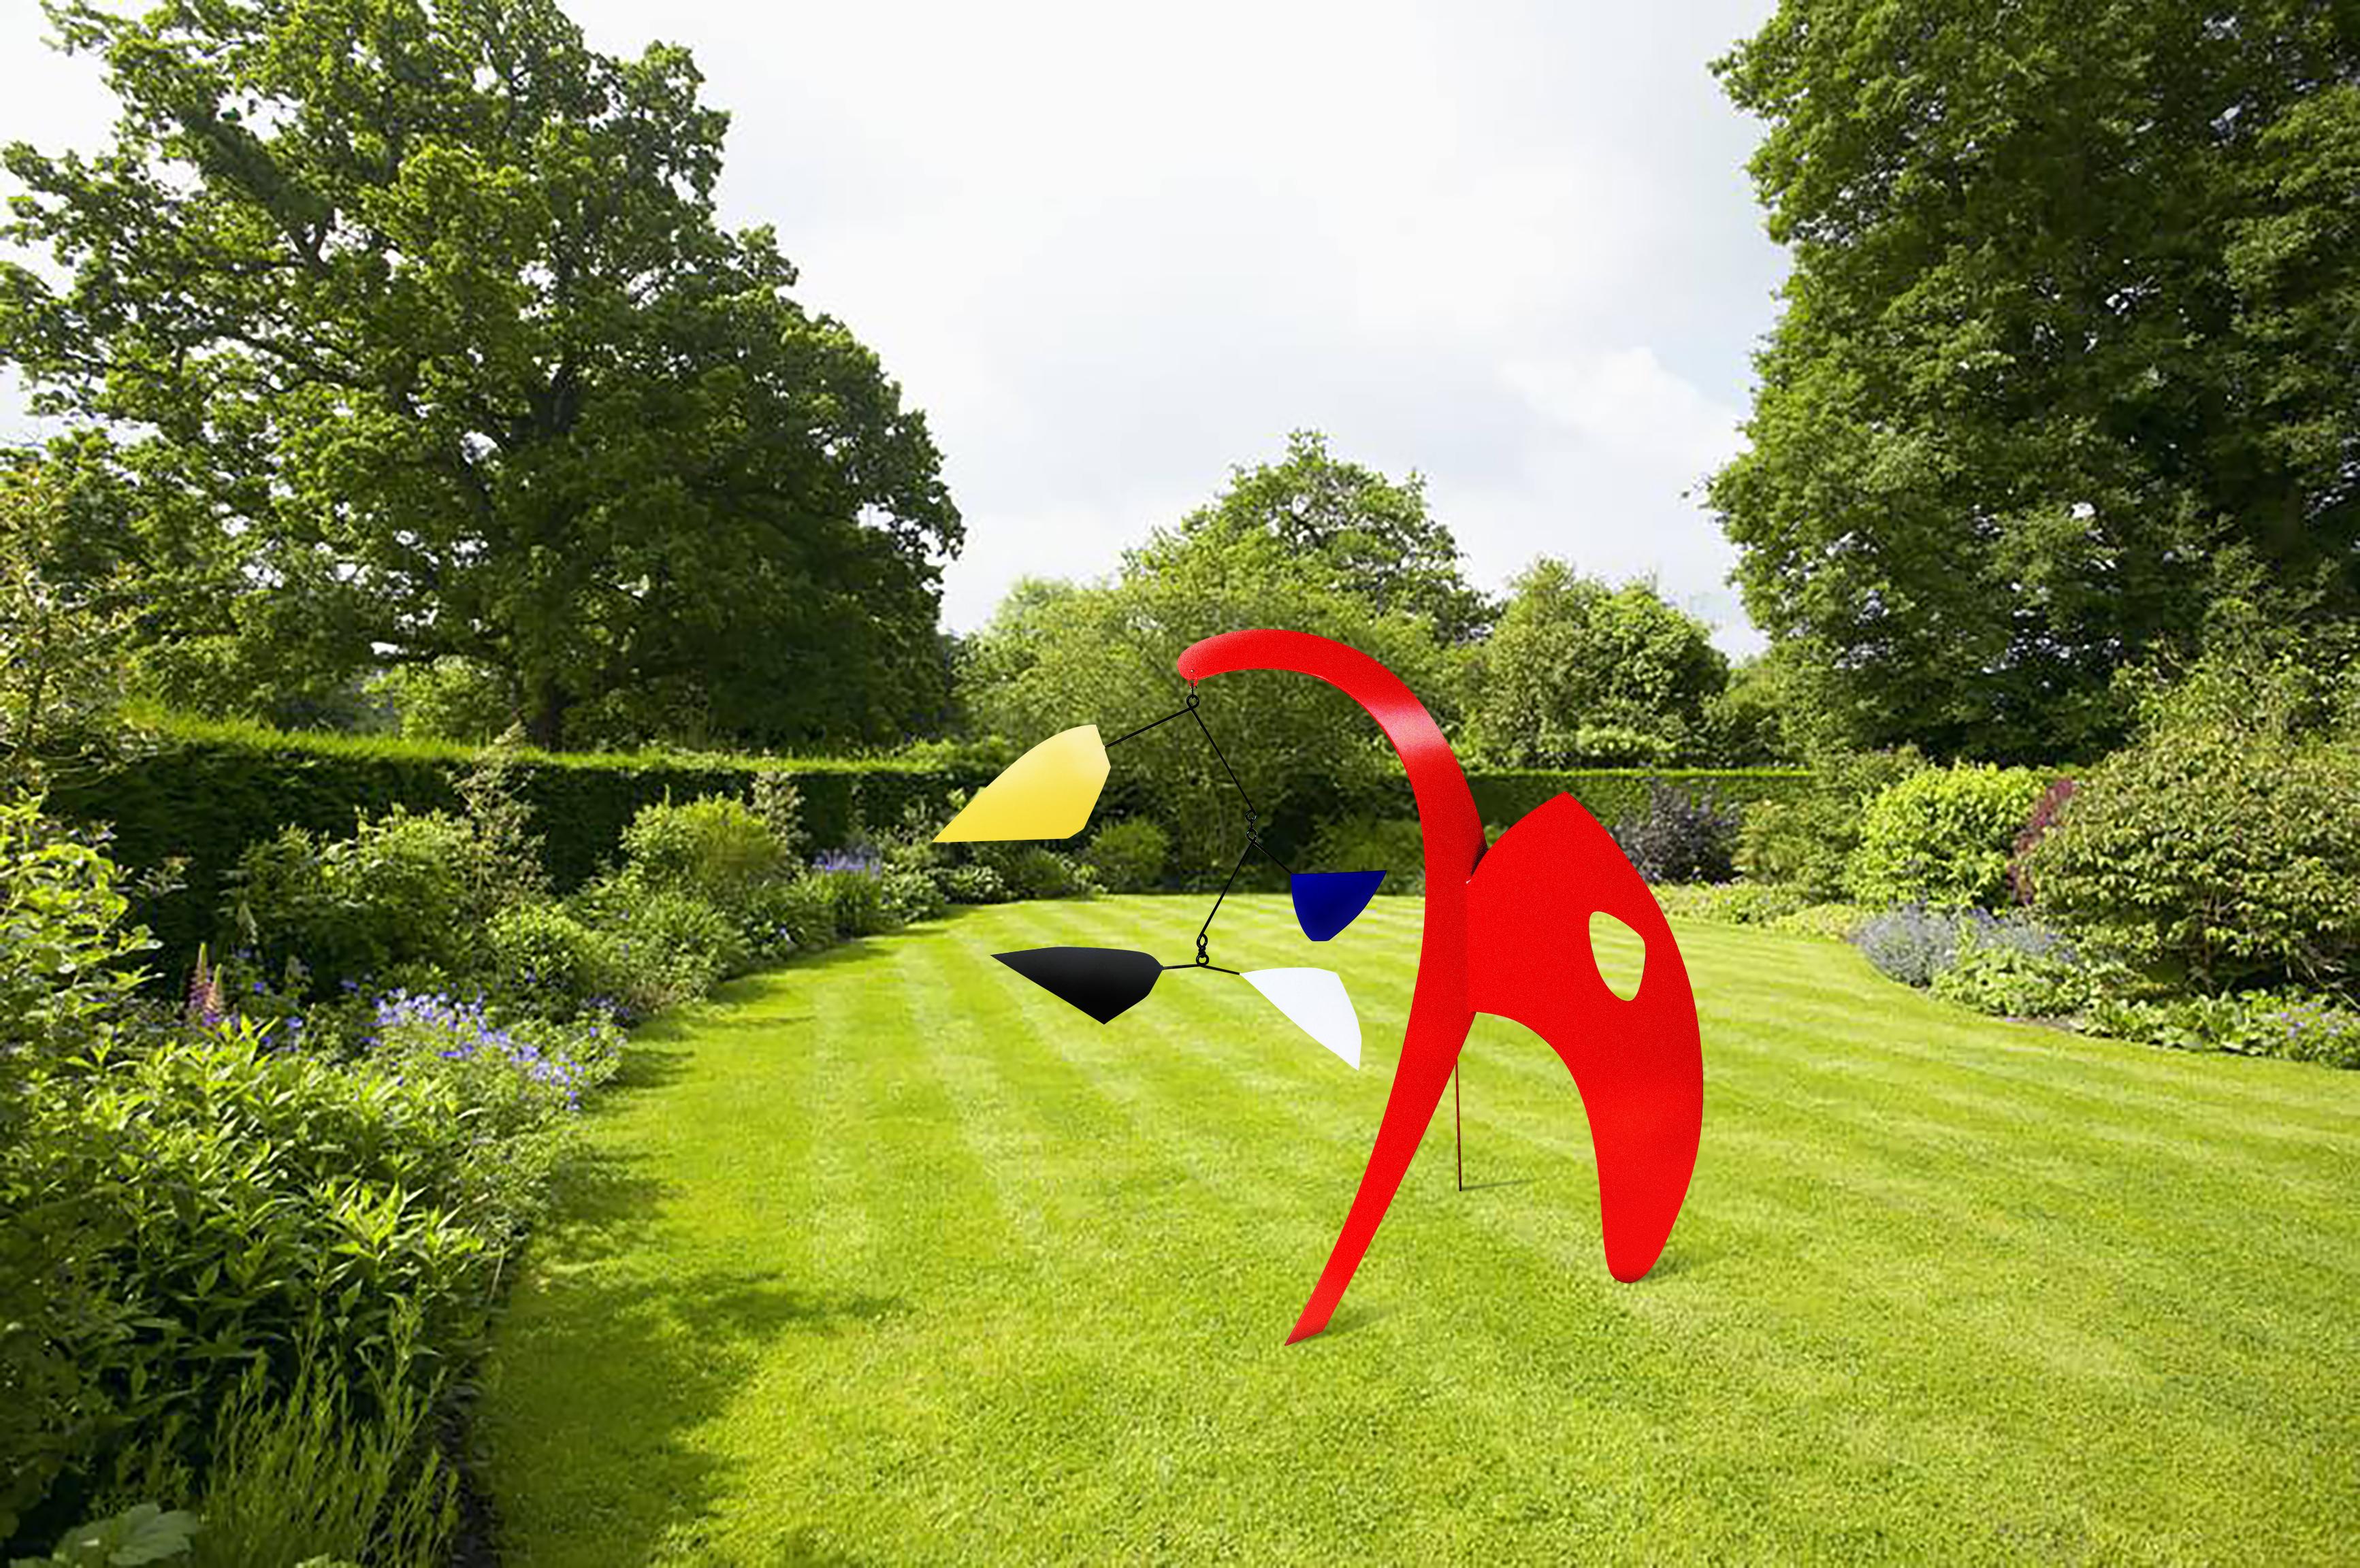 Joseph Meerbott Abstract Sculpture - Red Anteater Garden Sculpture